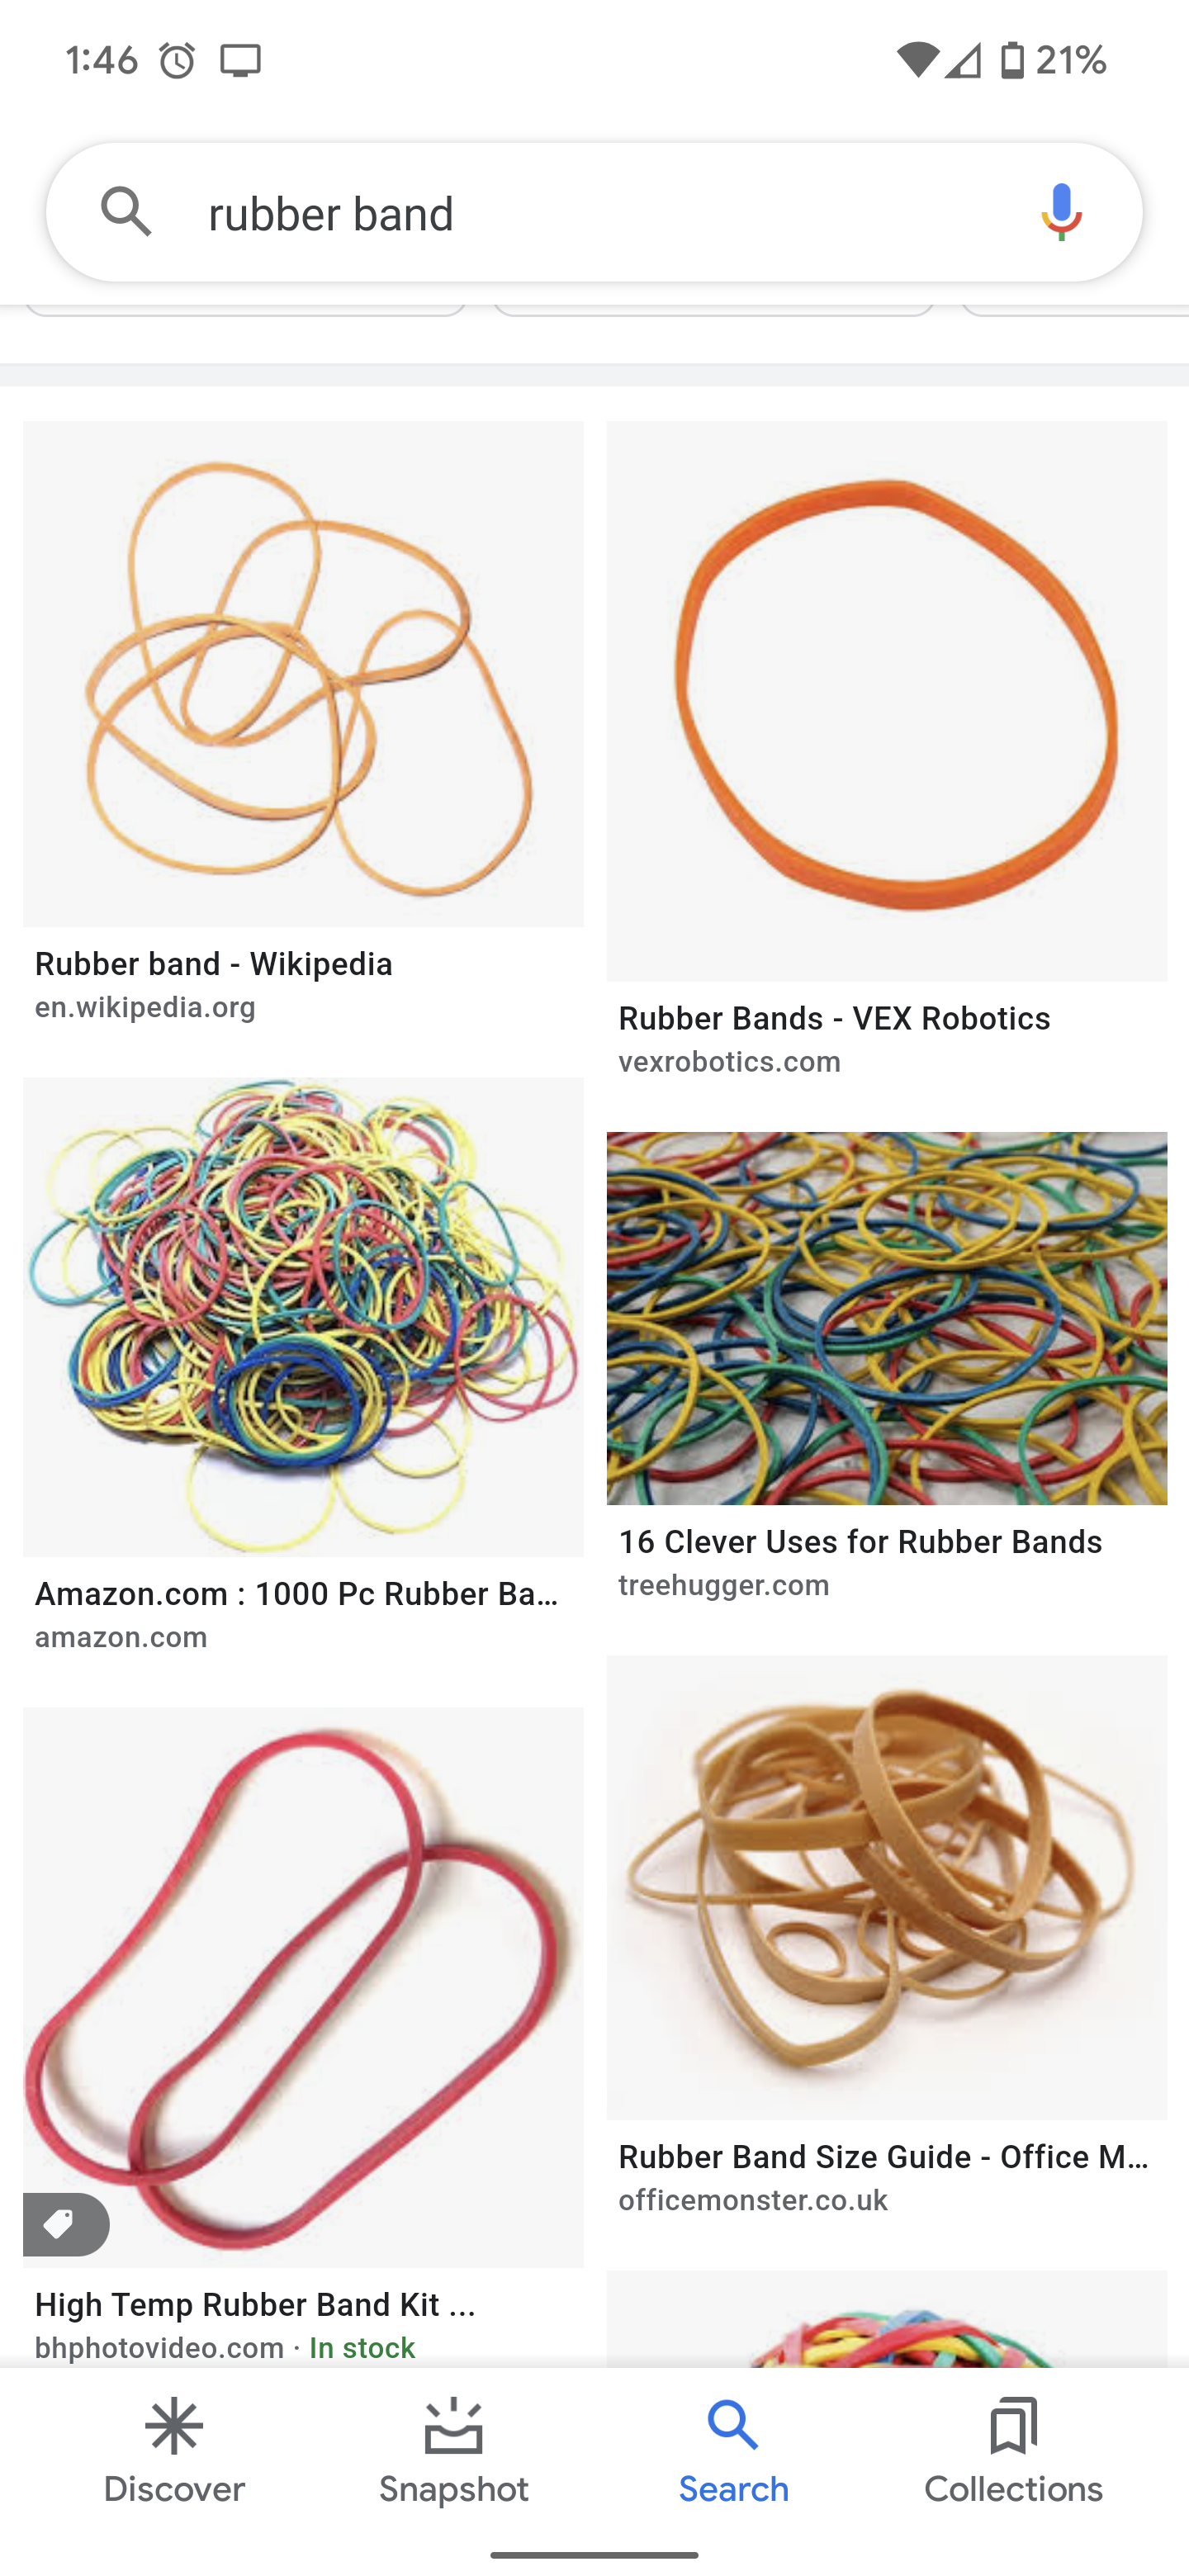 Rubber band - Wikipedia